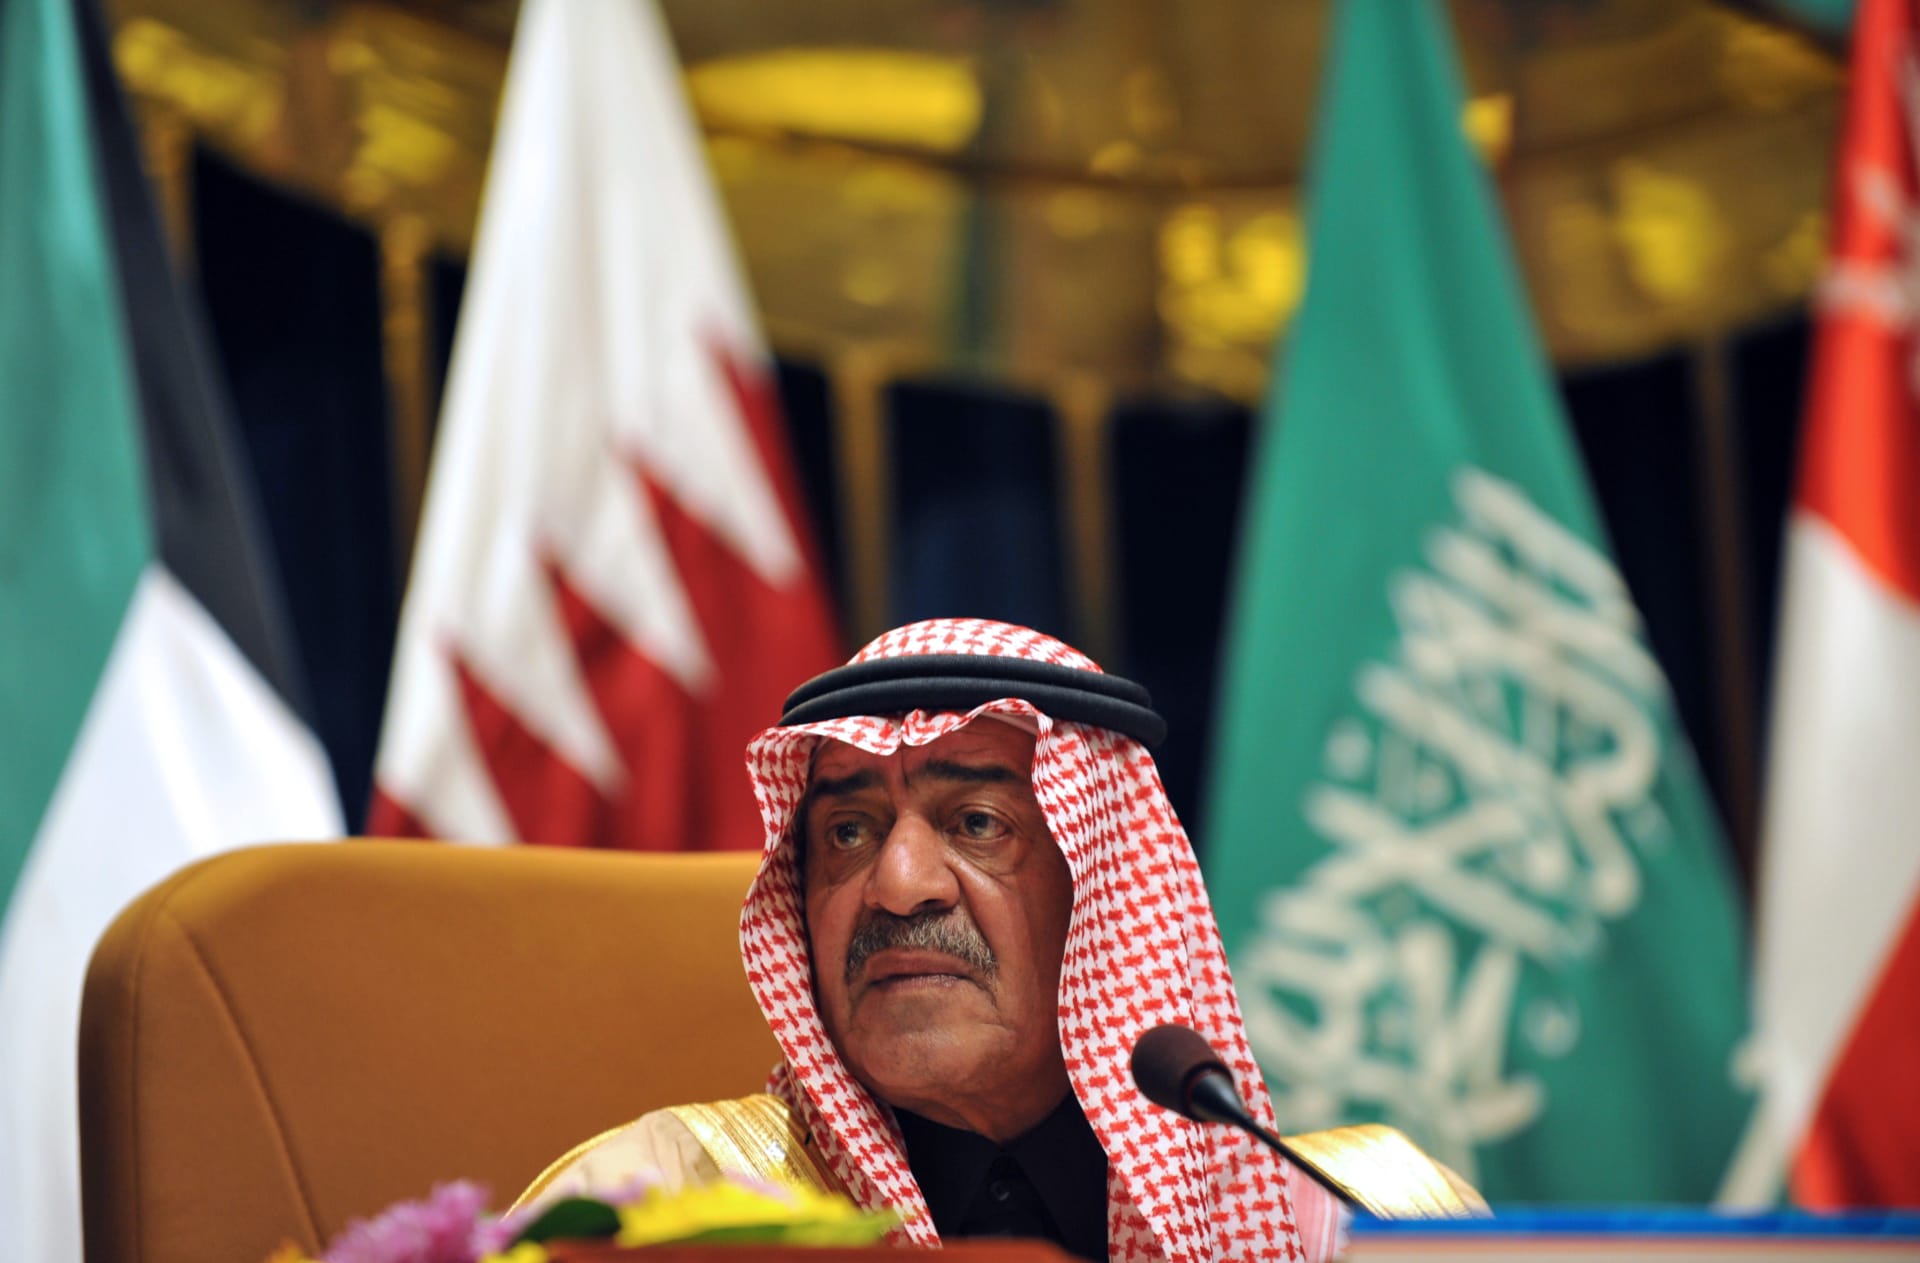 السعودية.. تداول فيديو وصول ولي العهد السابق إلى الرياض وتفاعل واسع على العودة